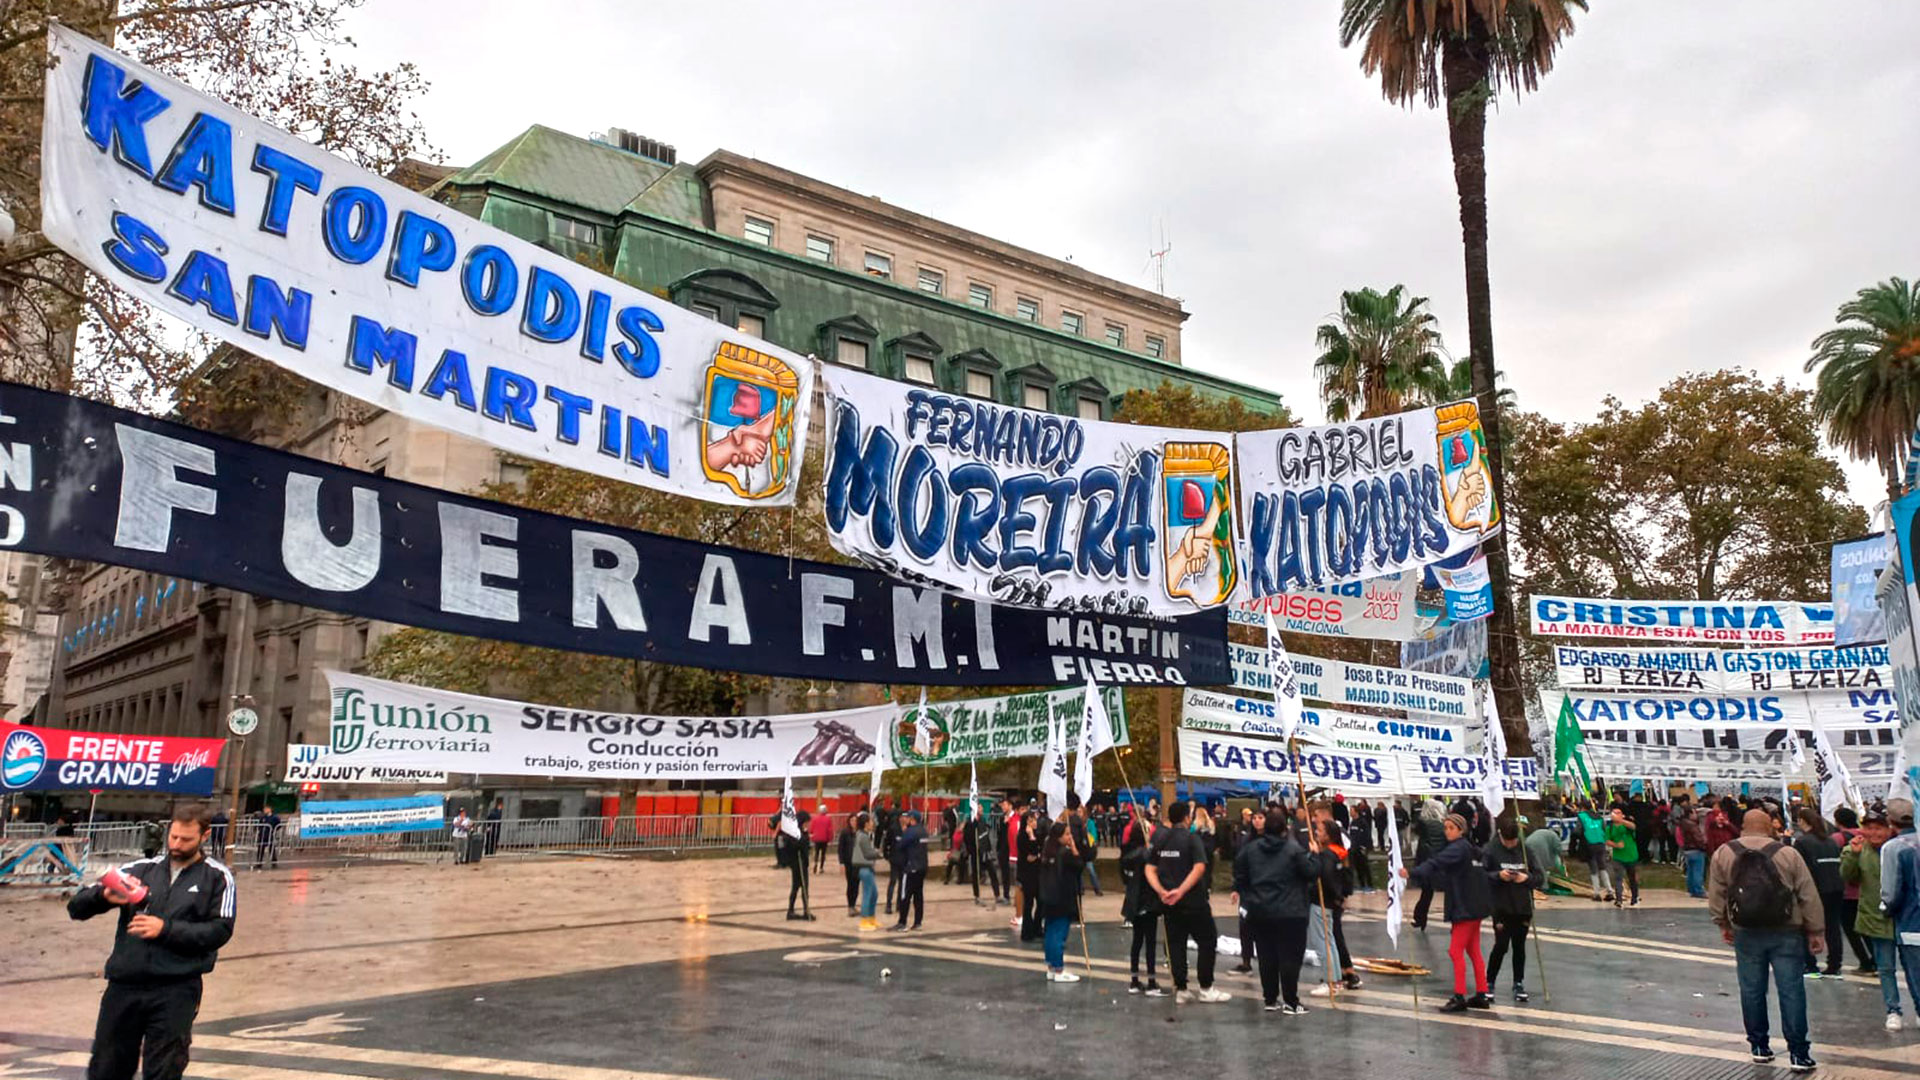 Hay banderas colgadas con nombres de dirigentes como Agustín Rossi y Gabriel Katopodis, además de las agrupaciones que acompañan la marcha